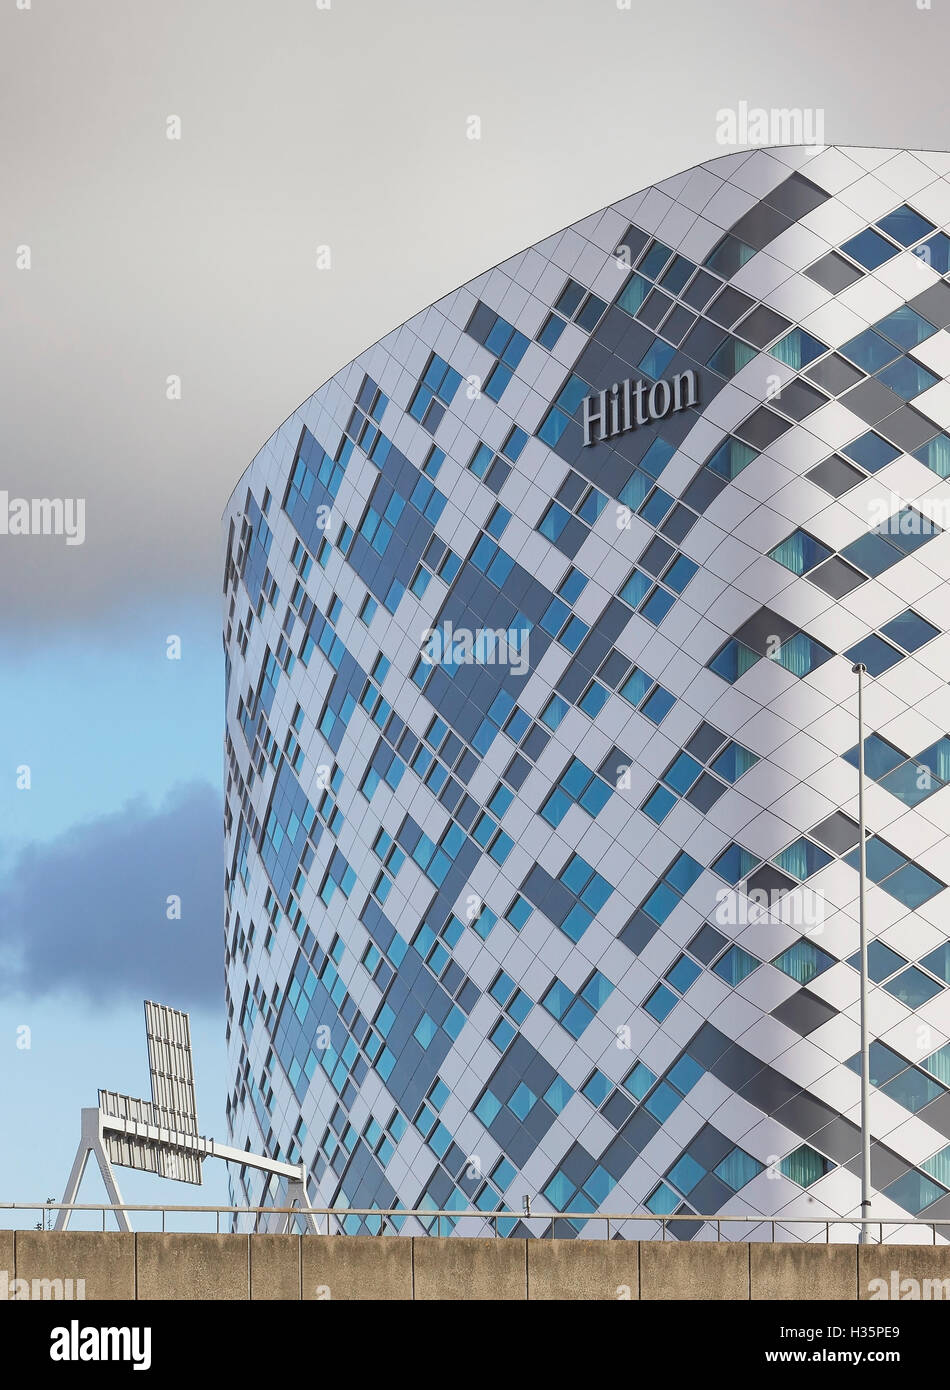 Particolare della facciata esterna con hotel di digital signage e autostrada. Hilton Amsterdam Airport Schiphol, Amsterdam, Paesi Bassi. Architetto: Mecanoo architects, 2015. Foto Stock